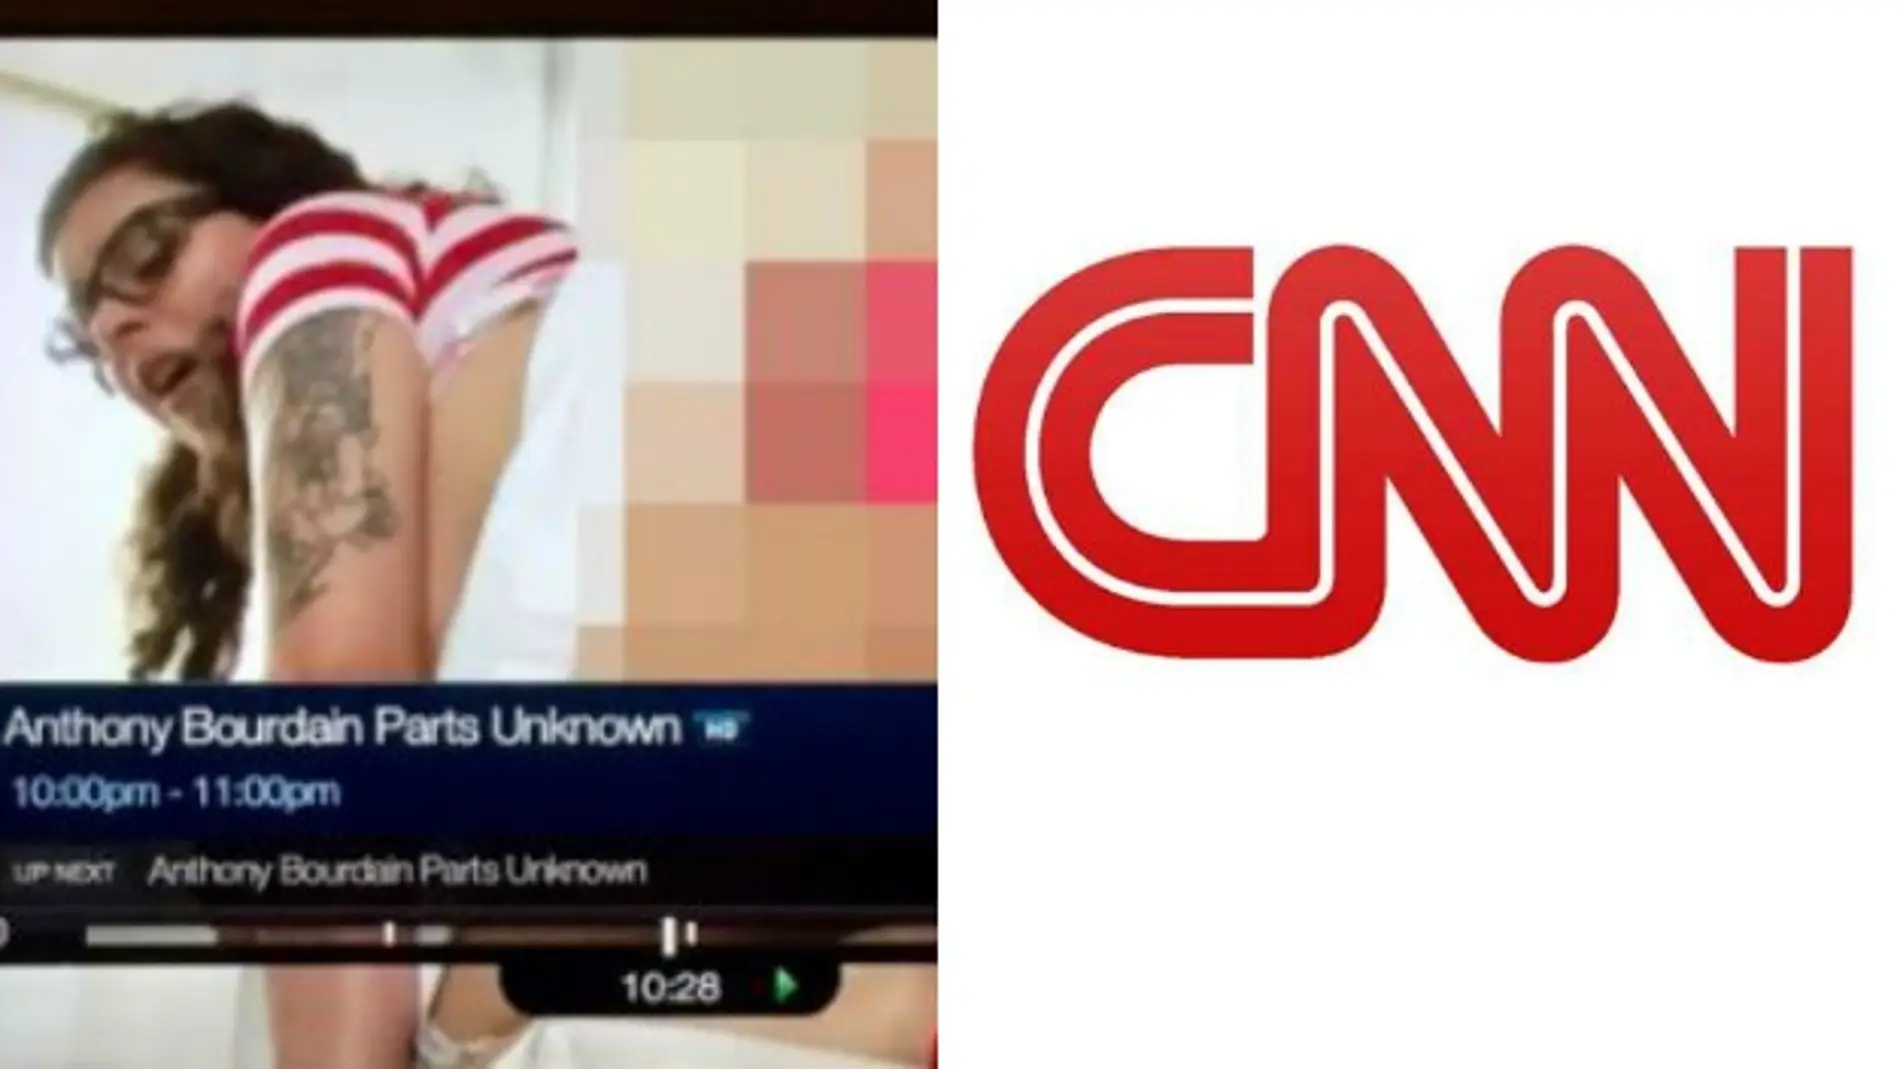 La CNN emite por error una película pornográfica en Prime Time 